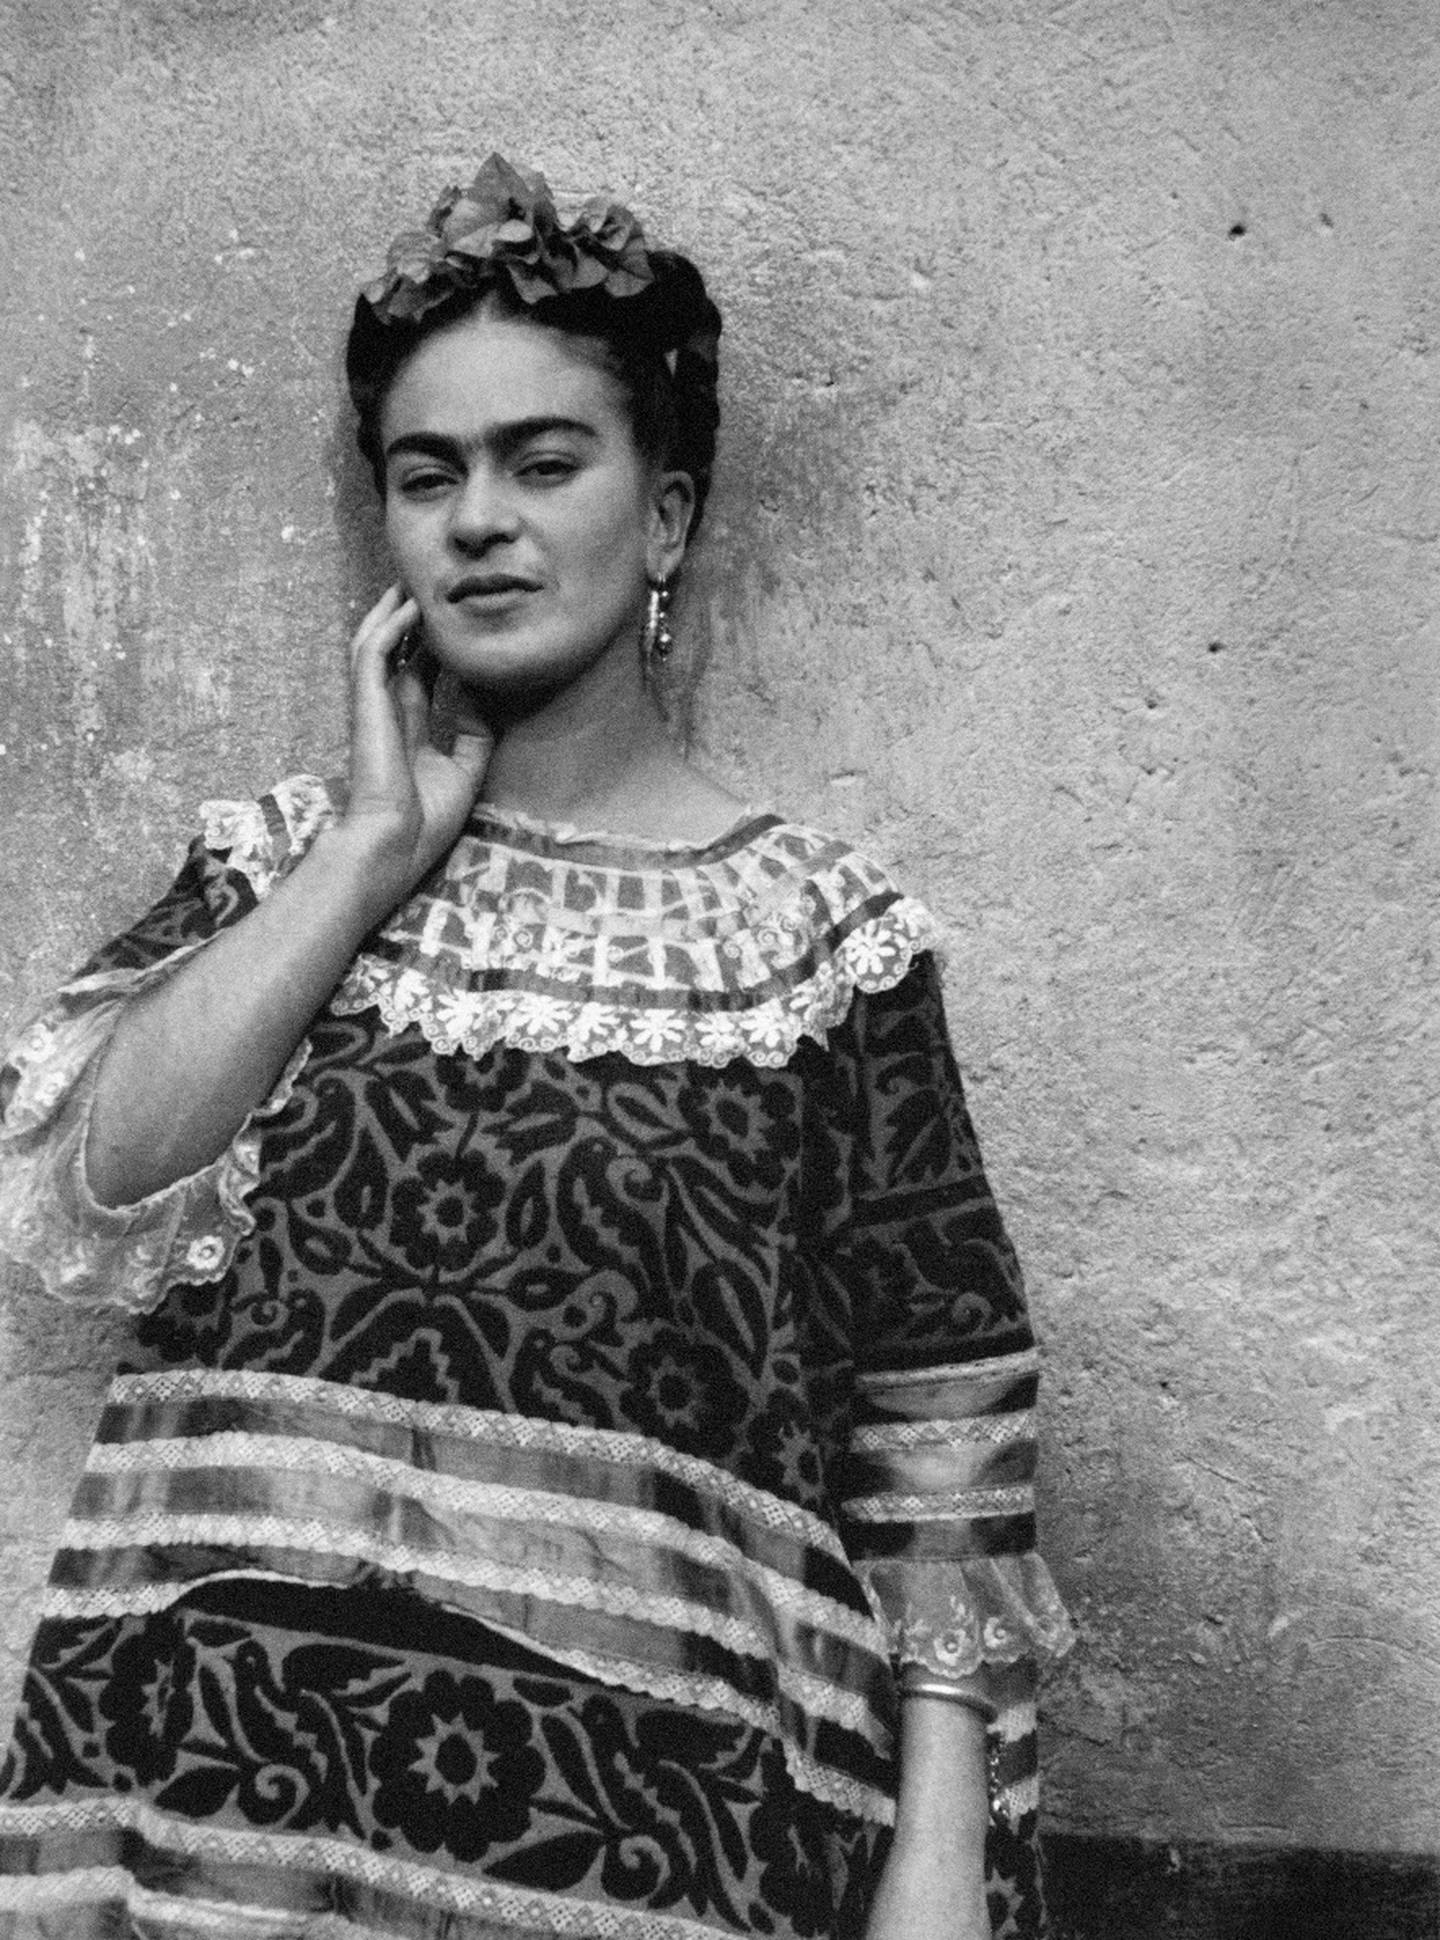 exposición fotográfica desnuda a frida kahlo en escazú la nación